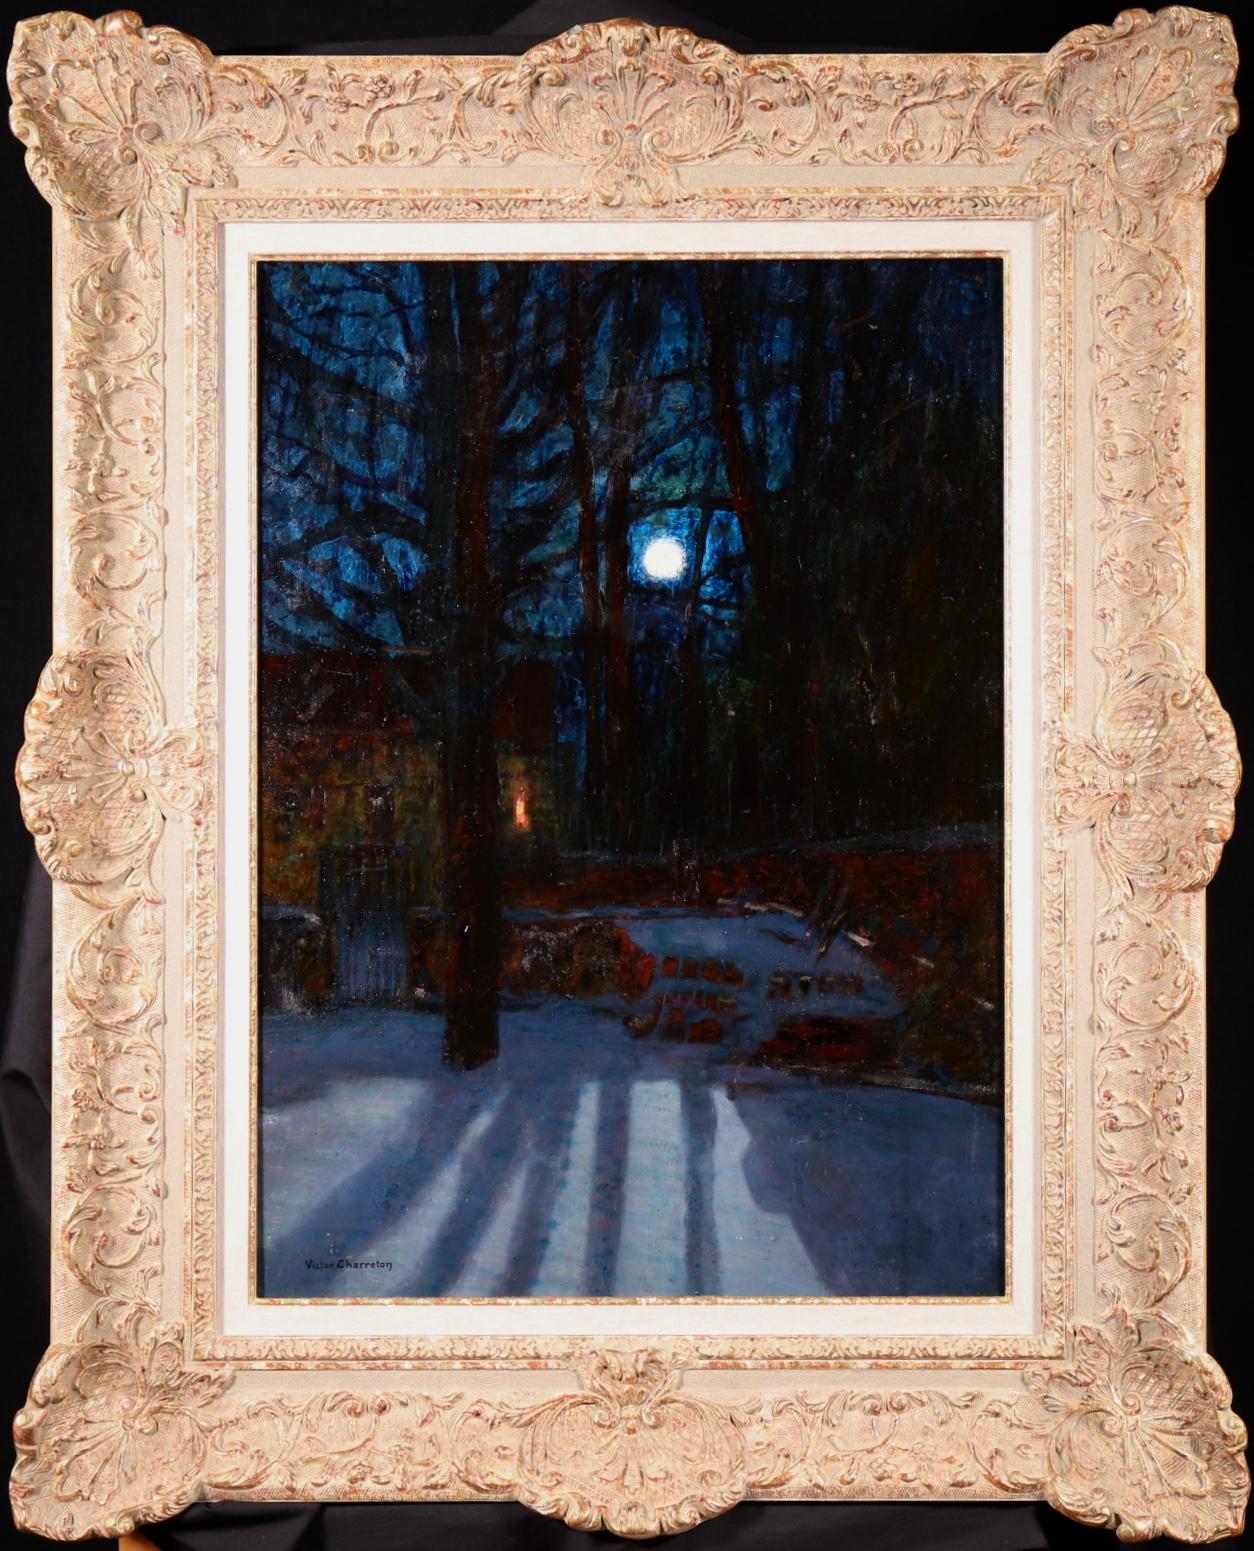 Superbe huile sur panneau signée vers 1920 par le très recherché peintre post-impressionniste français Victor Charreton. L'œuvre représente un chalet au milieu d'arbres dénudés et de la neige qui recouvre le sol. La lune brille dans le ciel clair de